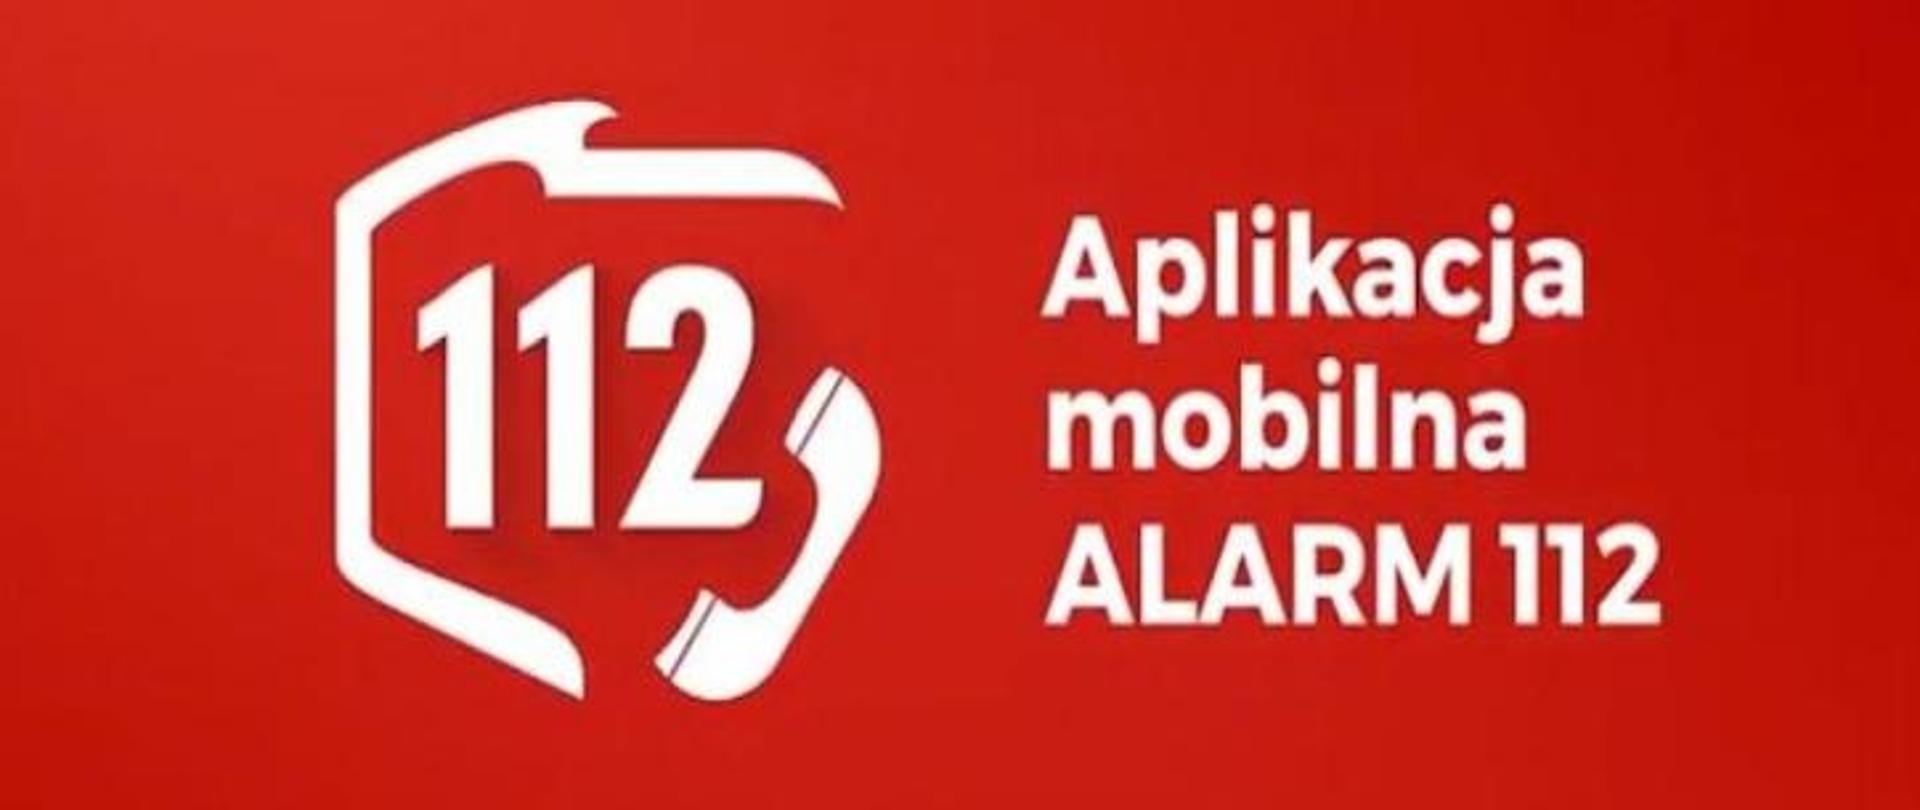 Baner aplikacji mobilnej ALARM 112